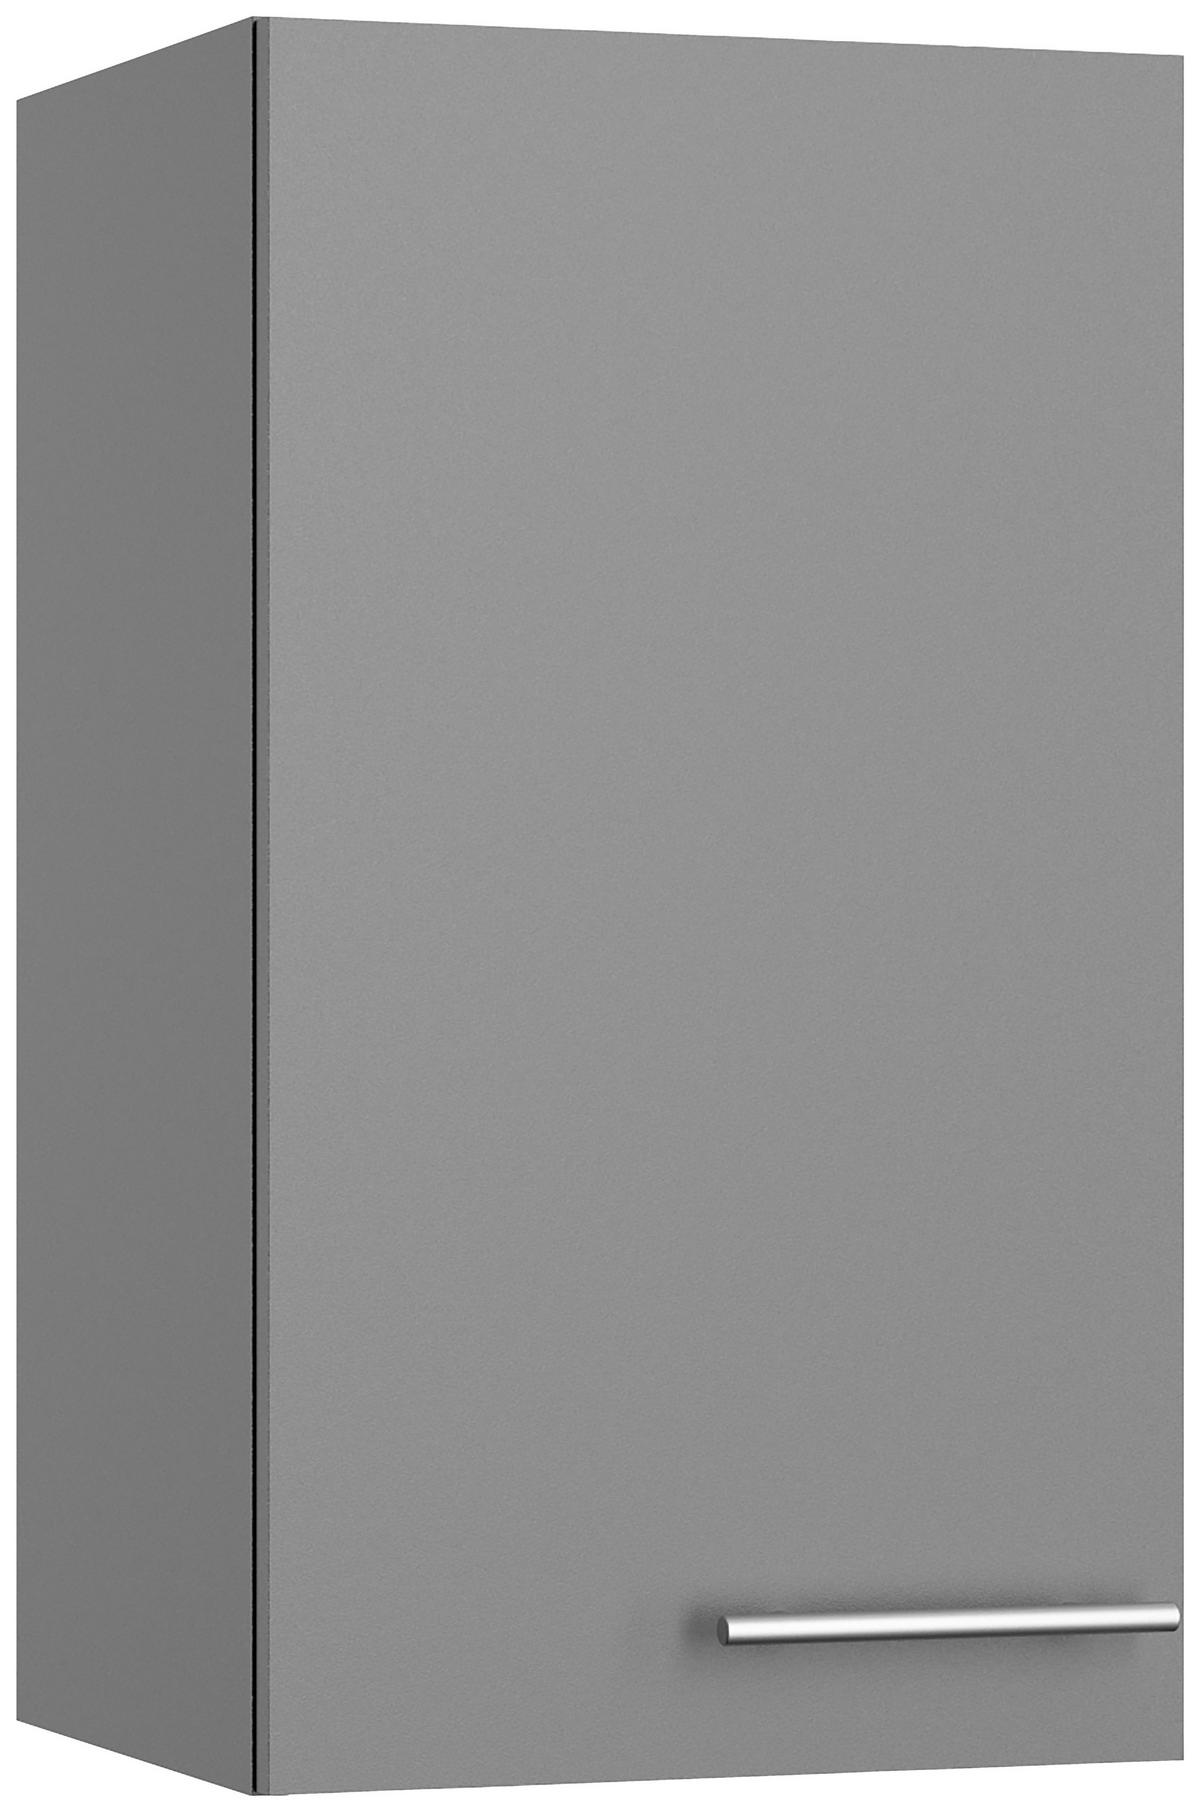 KÜCHENLEERBLOCK 210 cm   in Grau  - Edelstahlfarben/Anthrazit, Basics, Holzwerkstoff/Metall (210cm) - Optifit